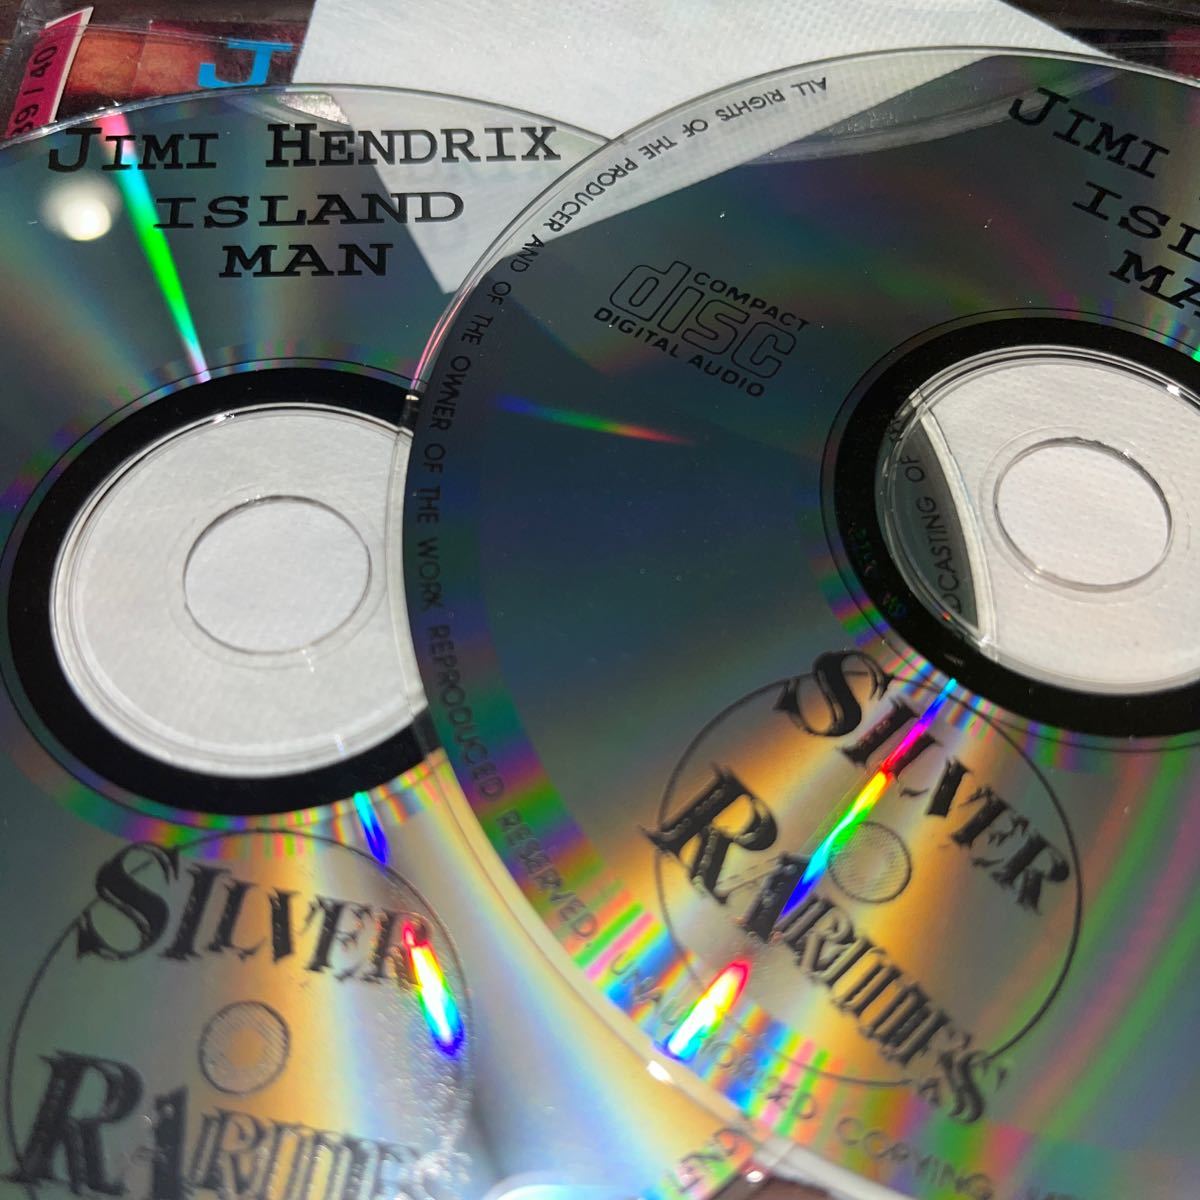  Island manジミヘンドリックス 2枚組　CDおまとめはお値下げさせていただきます希望の組み合わせをコメントしてください